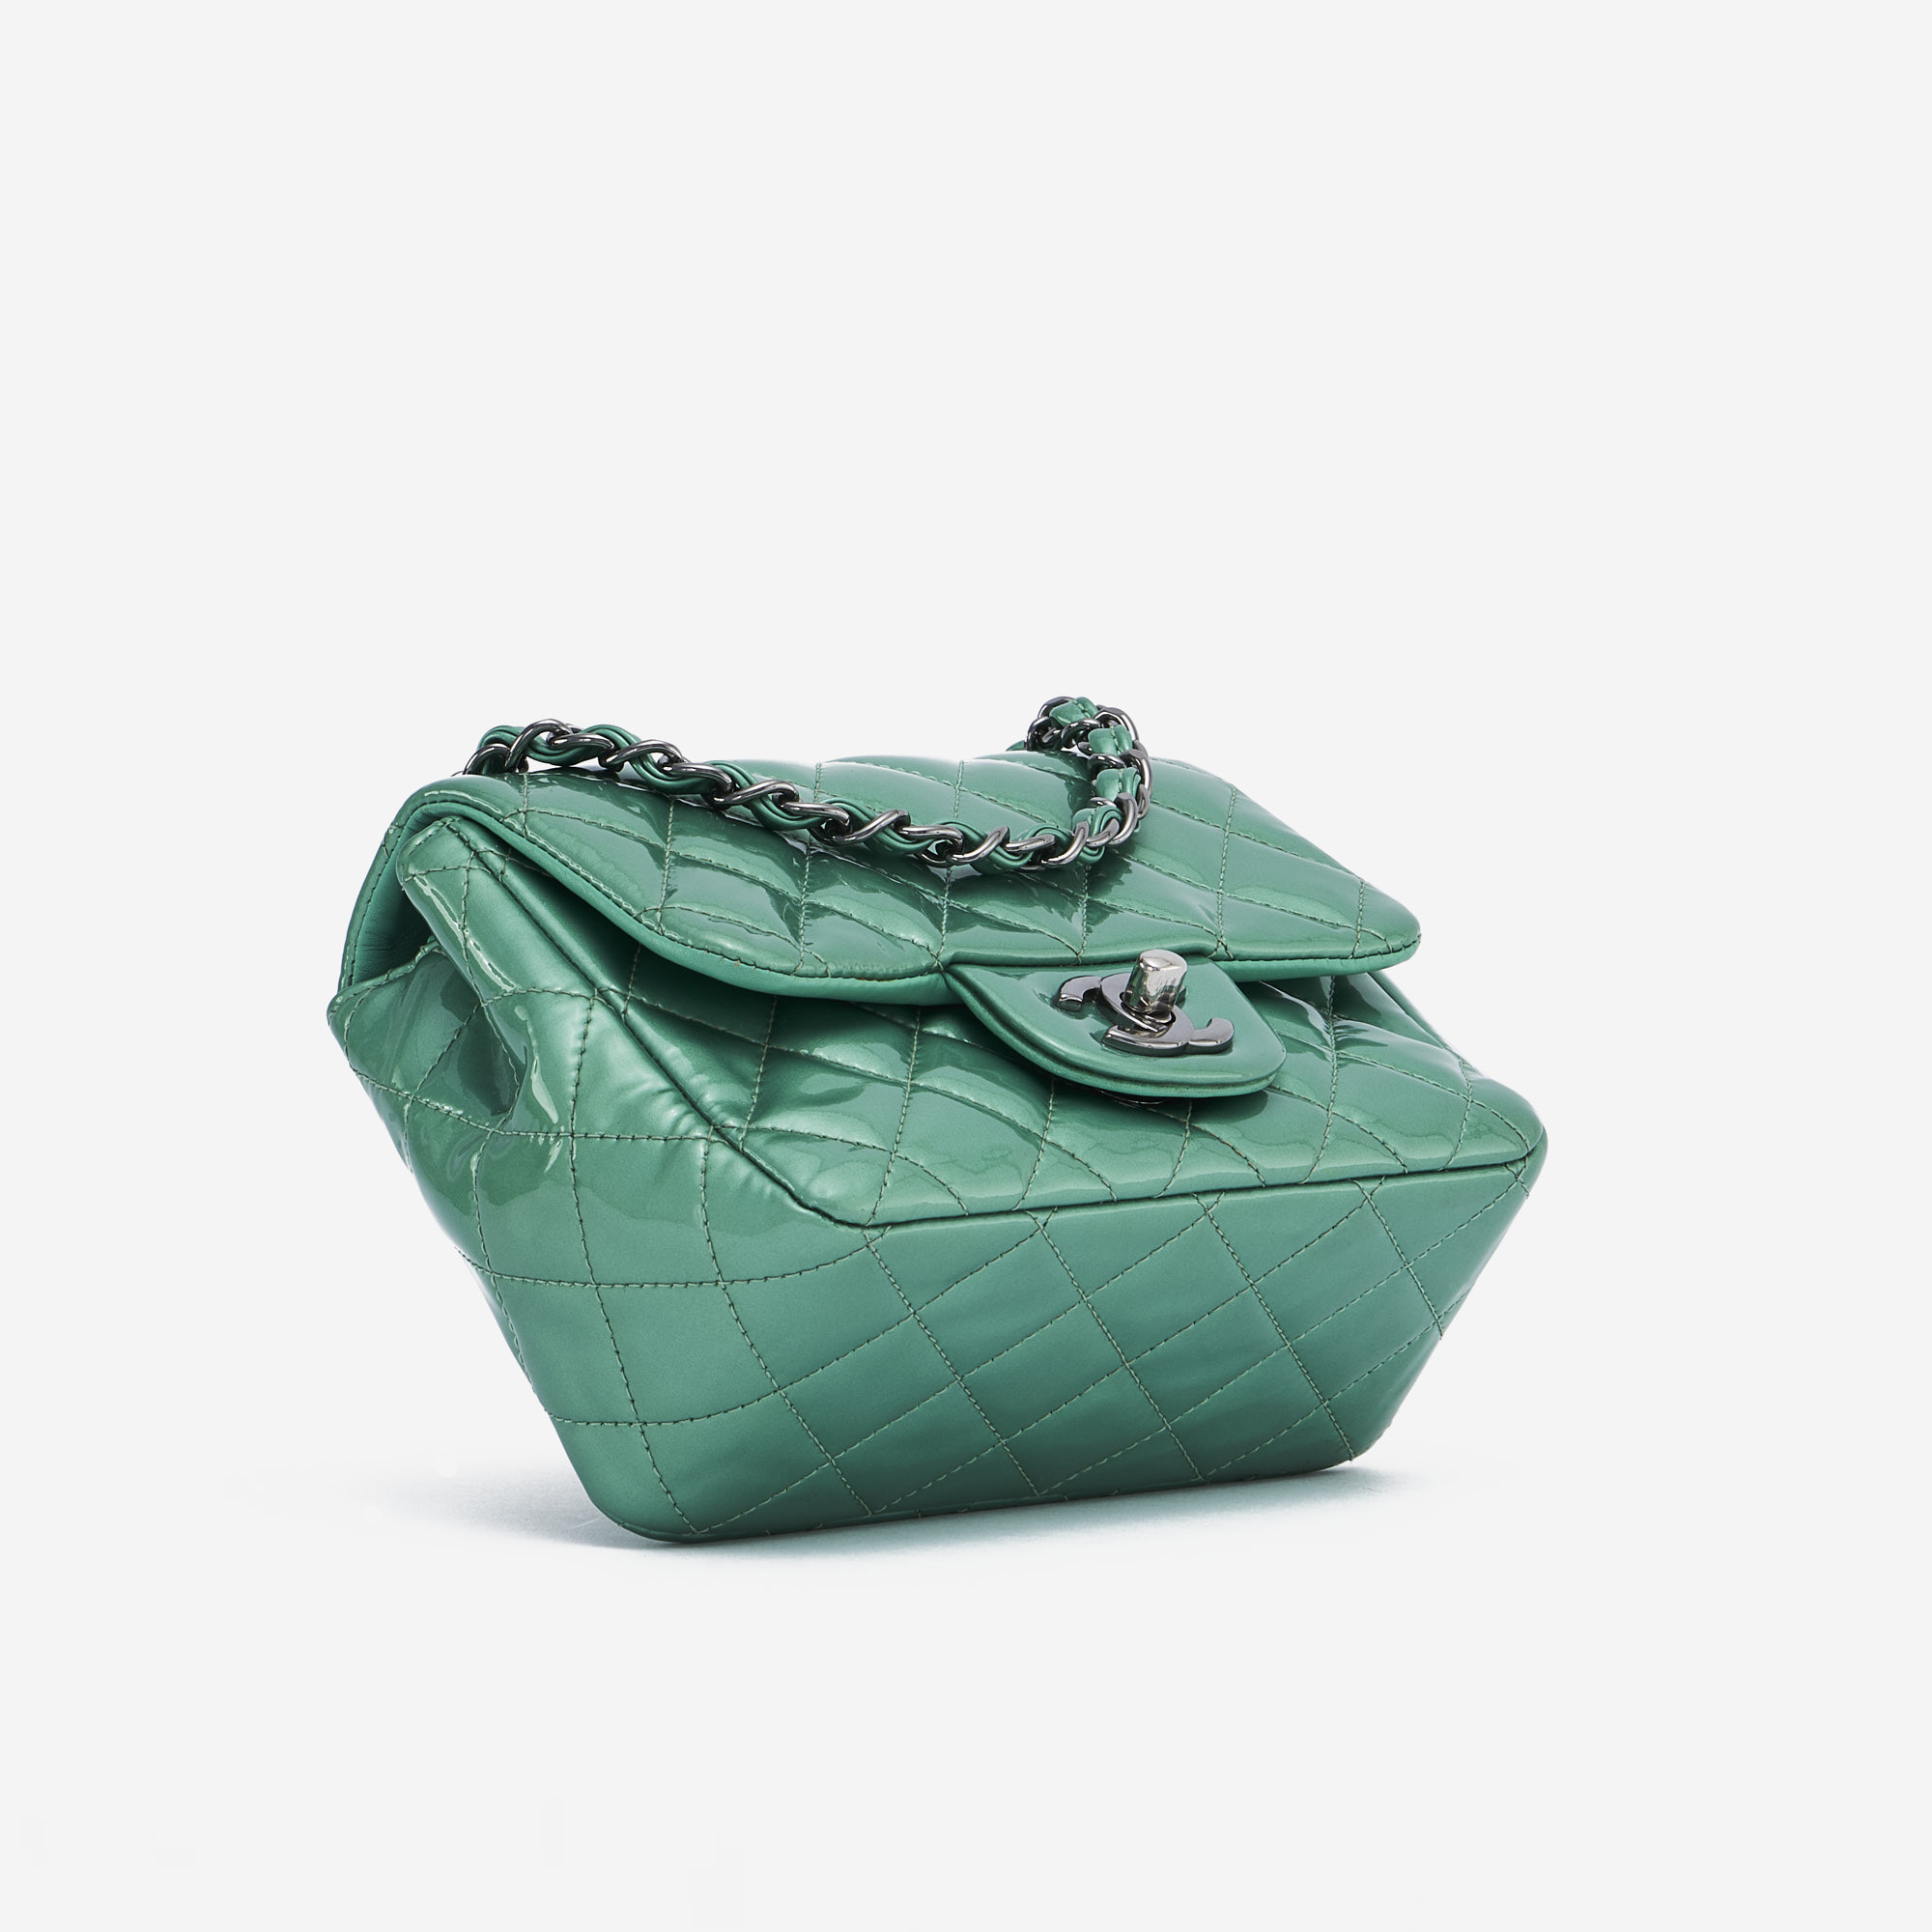 Chanel Timeless Mini sac carré verni vert SACLÀB